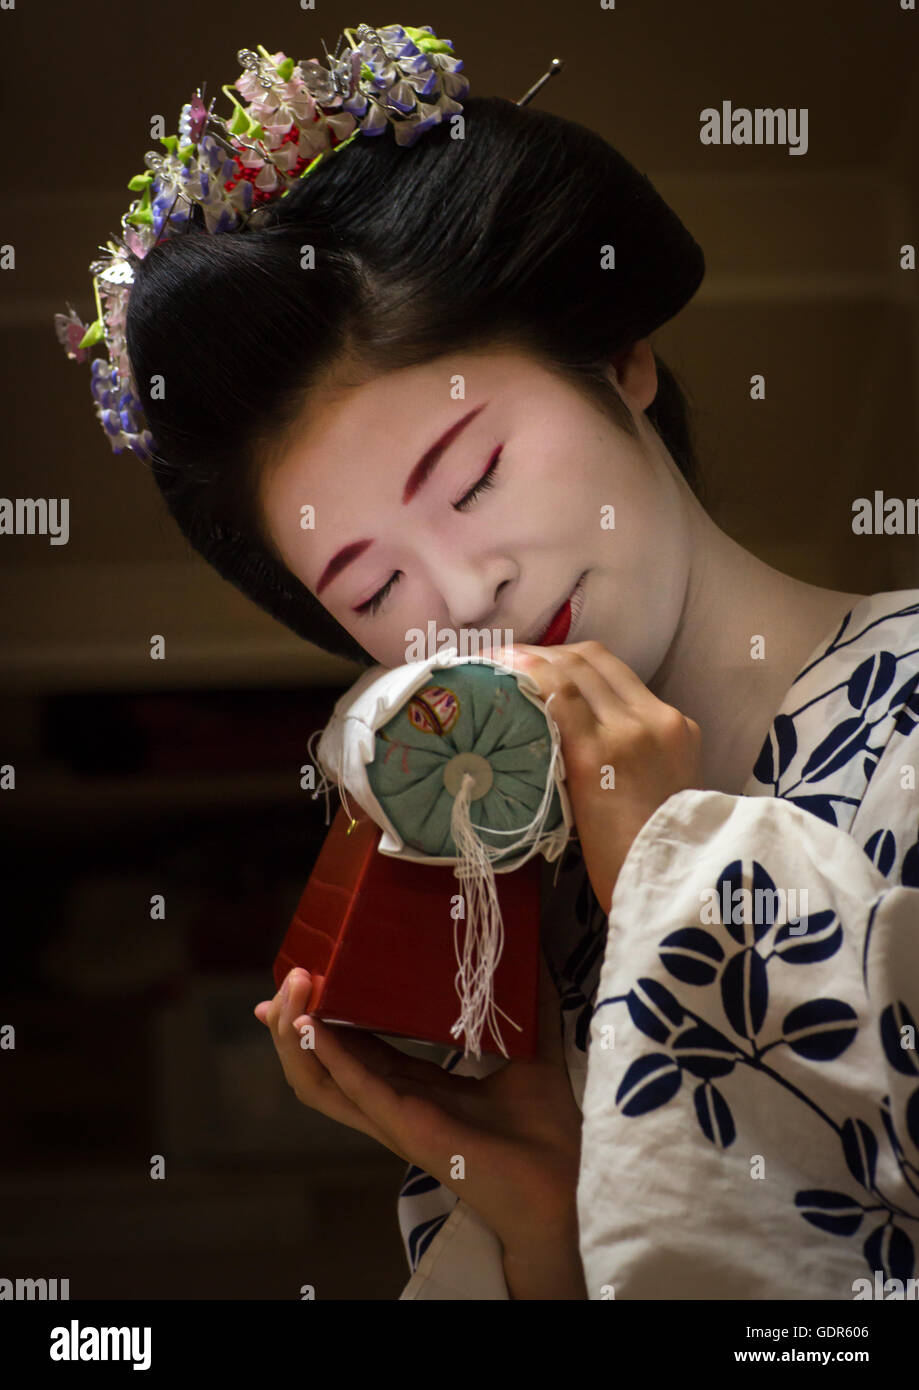 16 anni maiko chikasaya chiamato con il cuscino shes usato per proteggere la sua acconciatura, regione di Kansai, Kyoto, Giappone Foto Stock